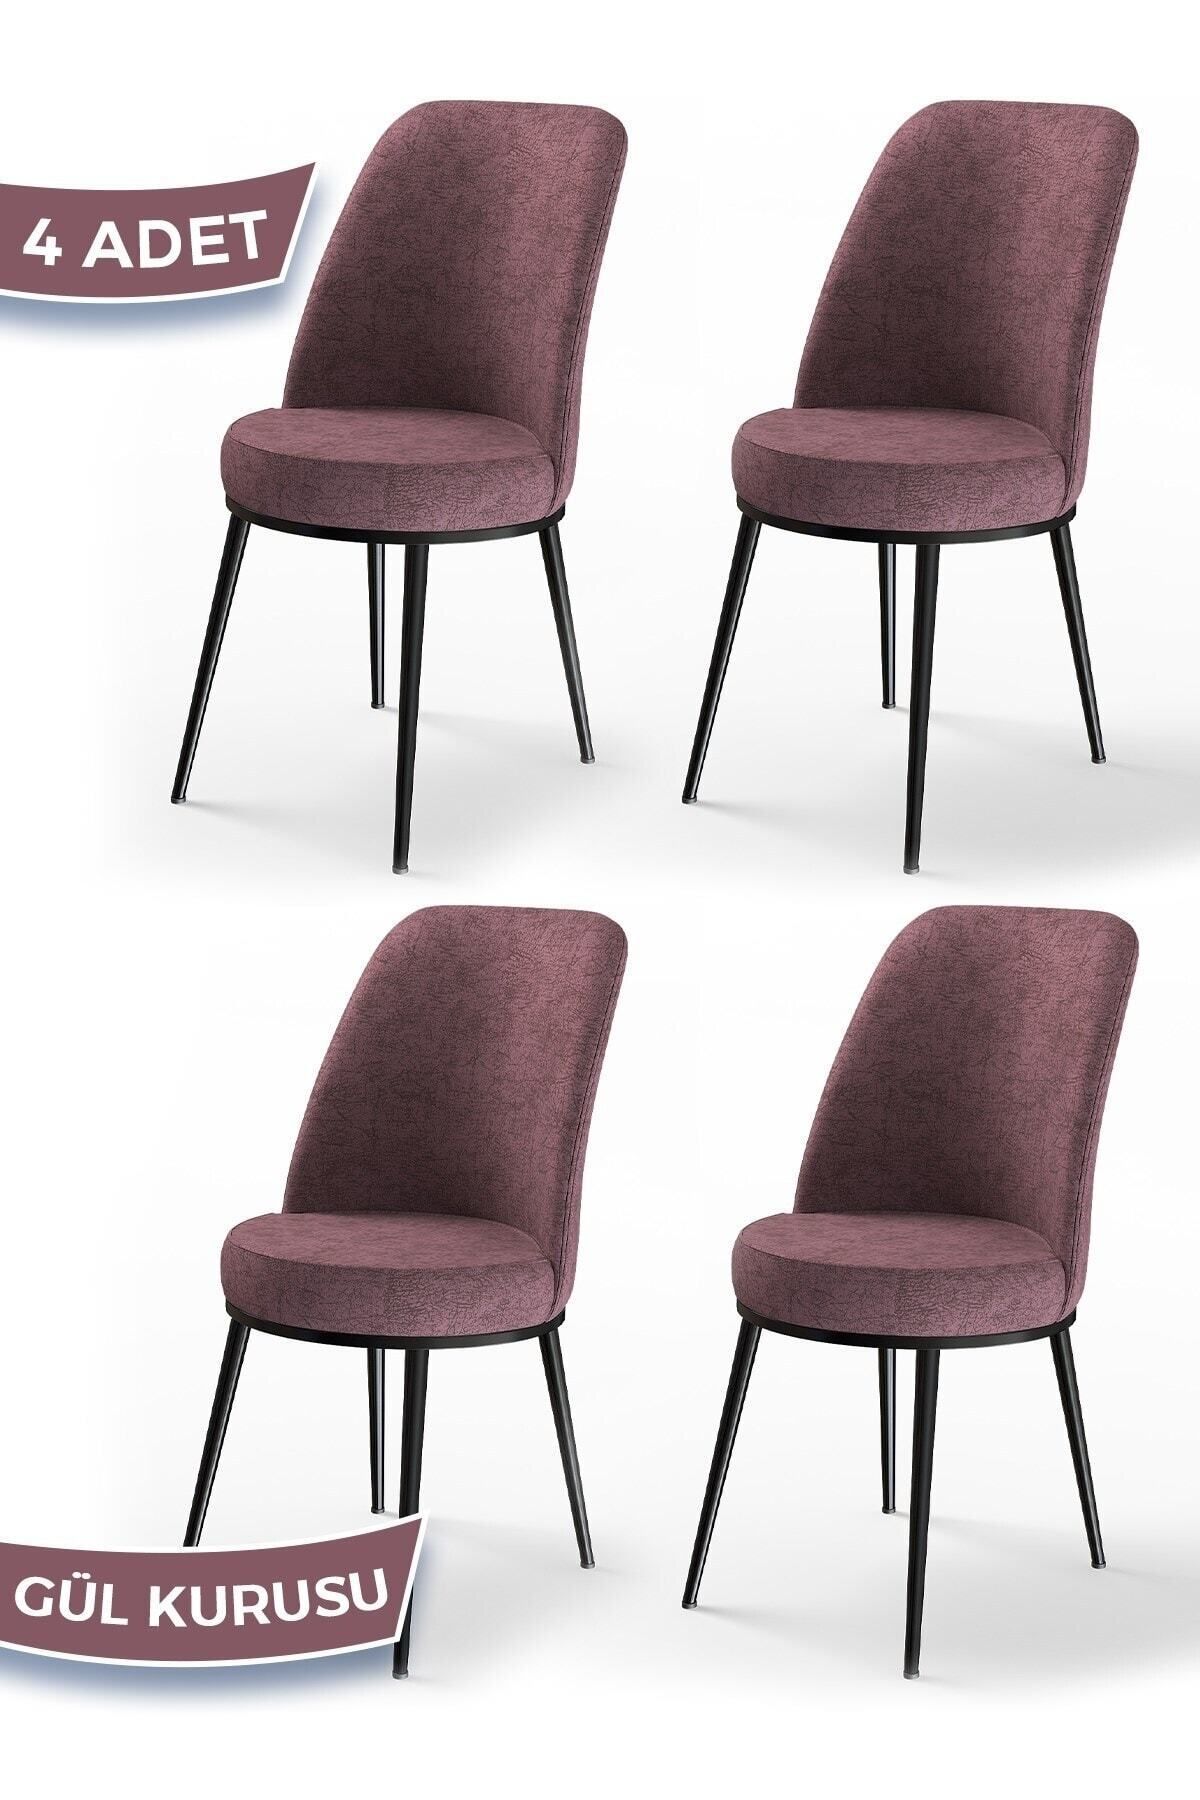 Canisa Concept Dexa Serisi, Üst Kalite Yemek Odası Sandalyesi, Metal Siyah Iskeletli, 4 Adet Gülkurusu Sandalye